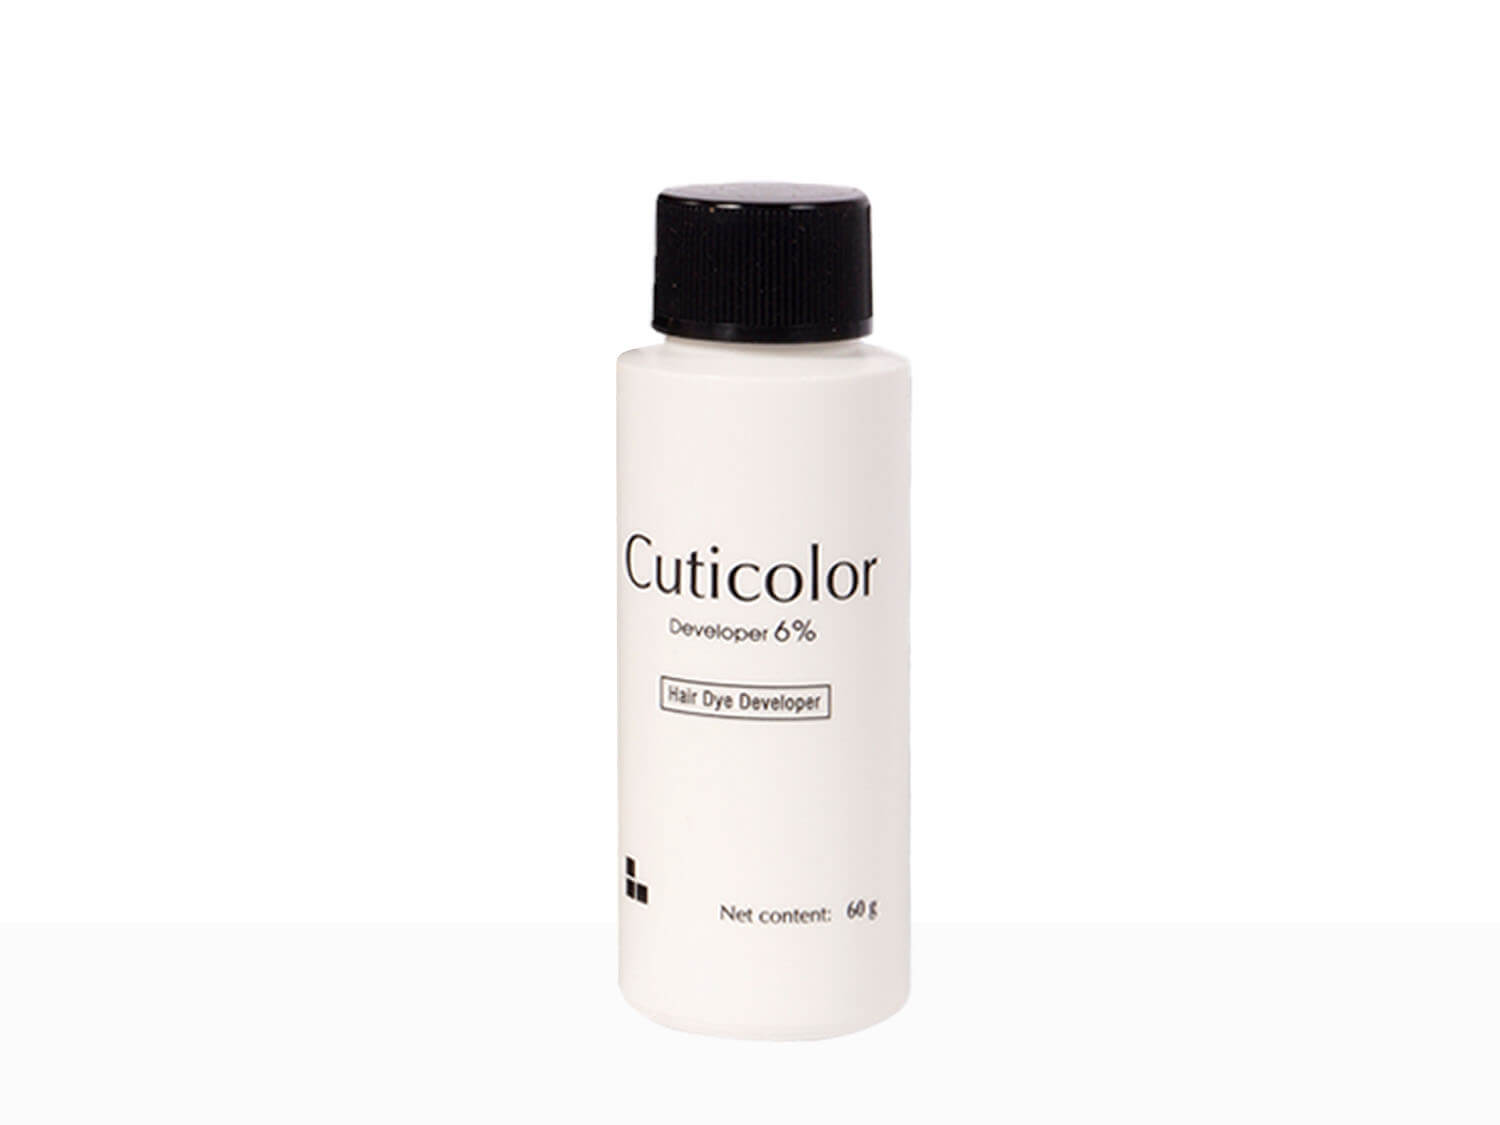 Cuticolor Hair Coloring Cream Dark Brown 3.0 - Clinikally